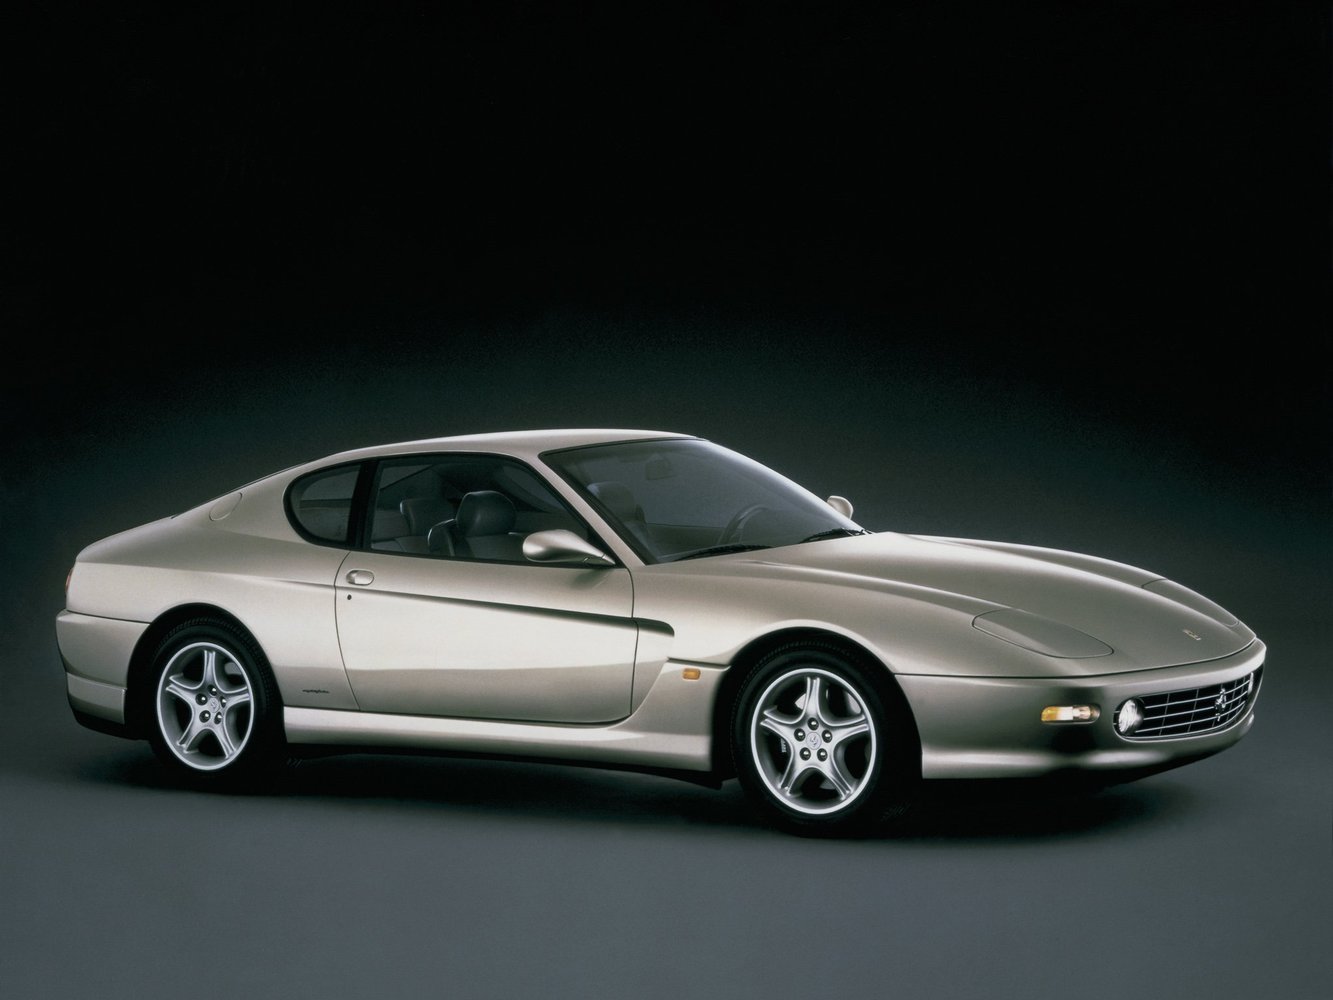 Ferrari 456 1998 - 2004